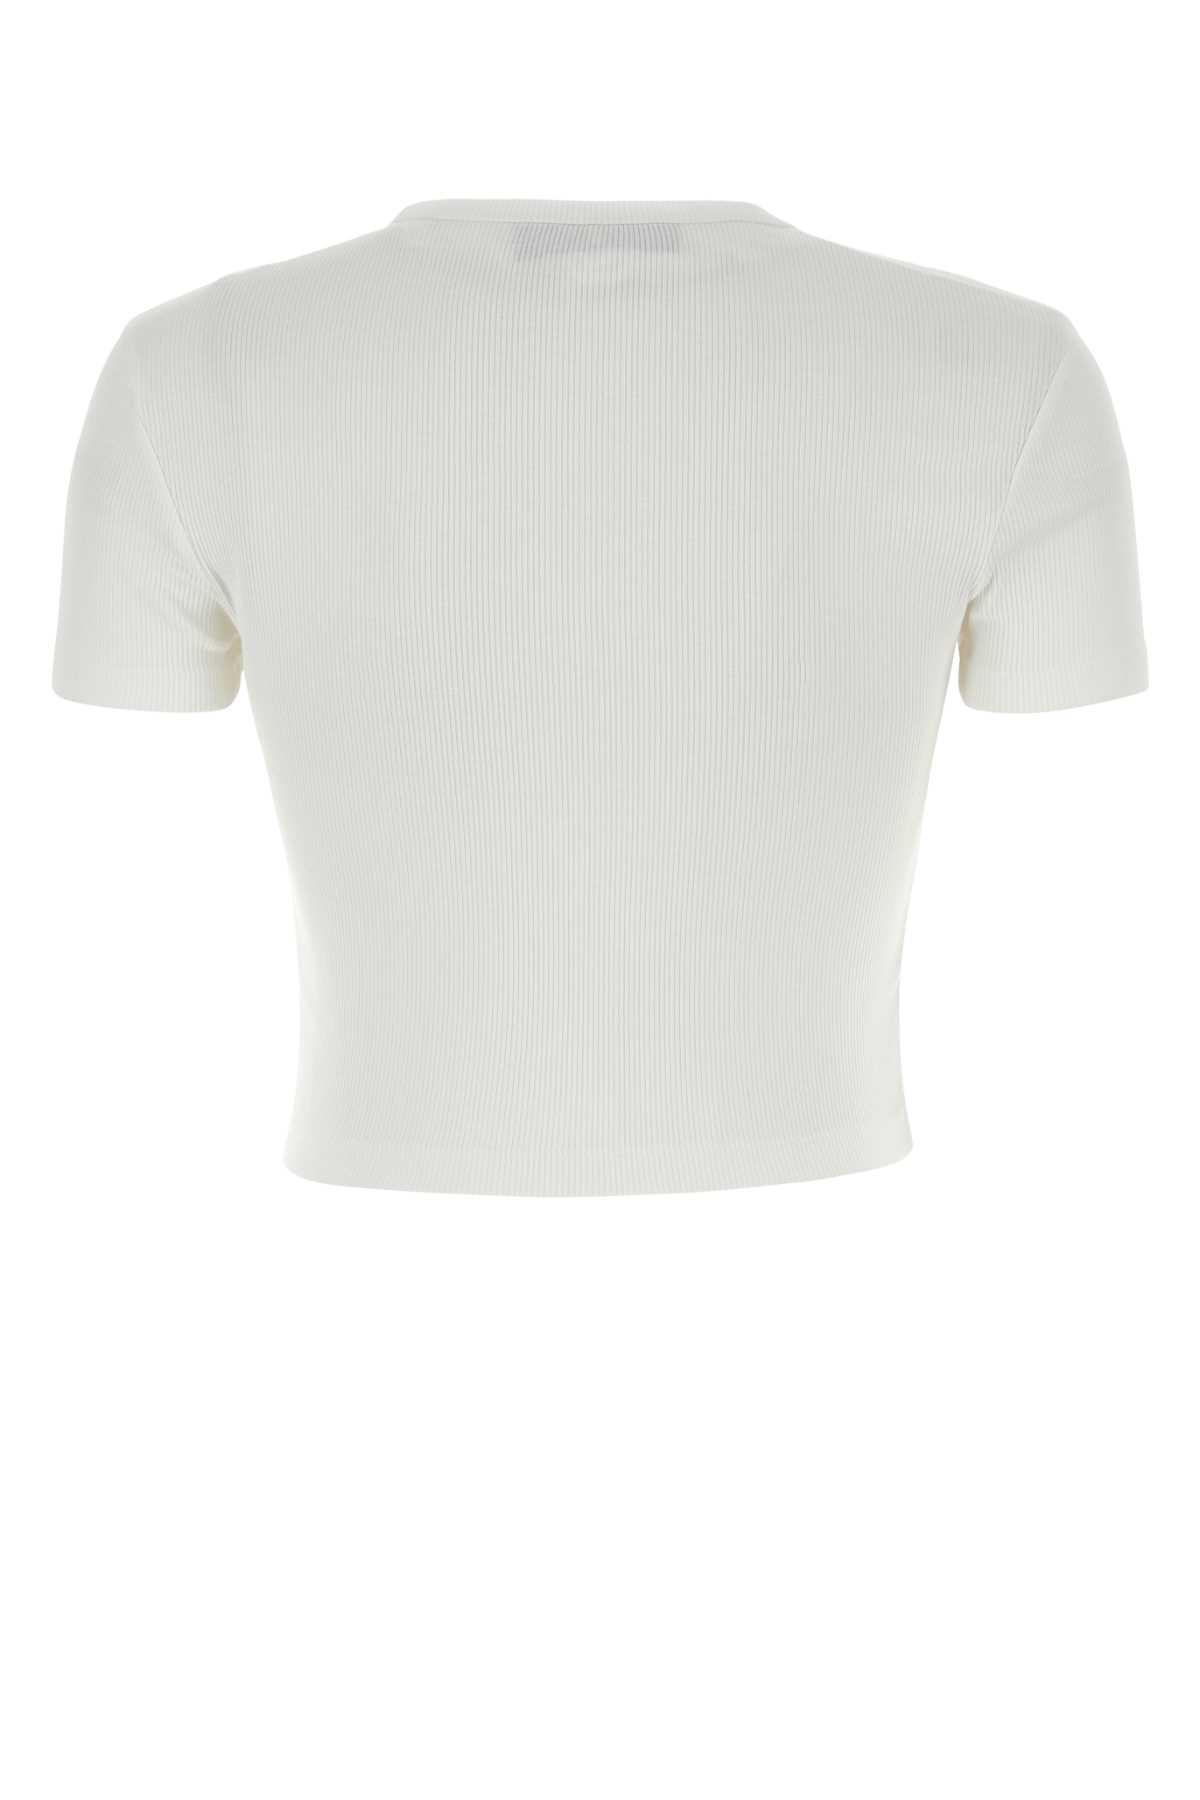 Fendi White Stretch Cotton T-shirt